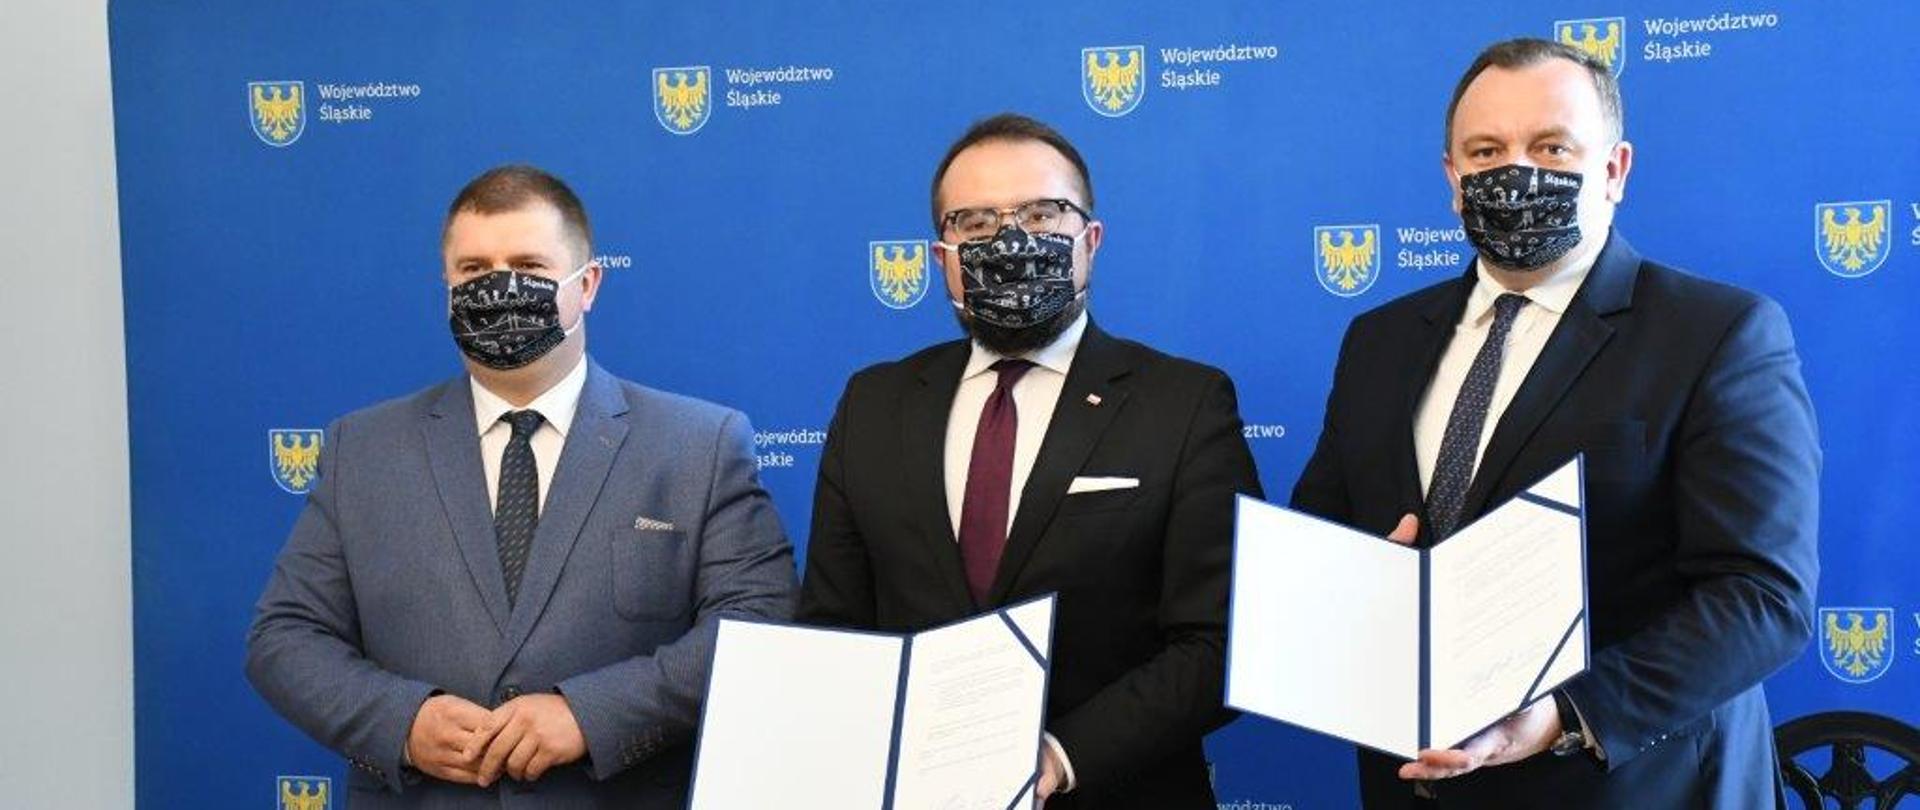 Podpisanie Porozumienia w UM w Katowicach